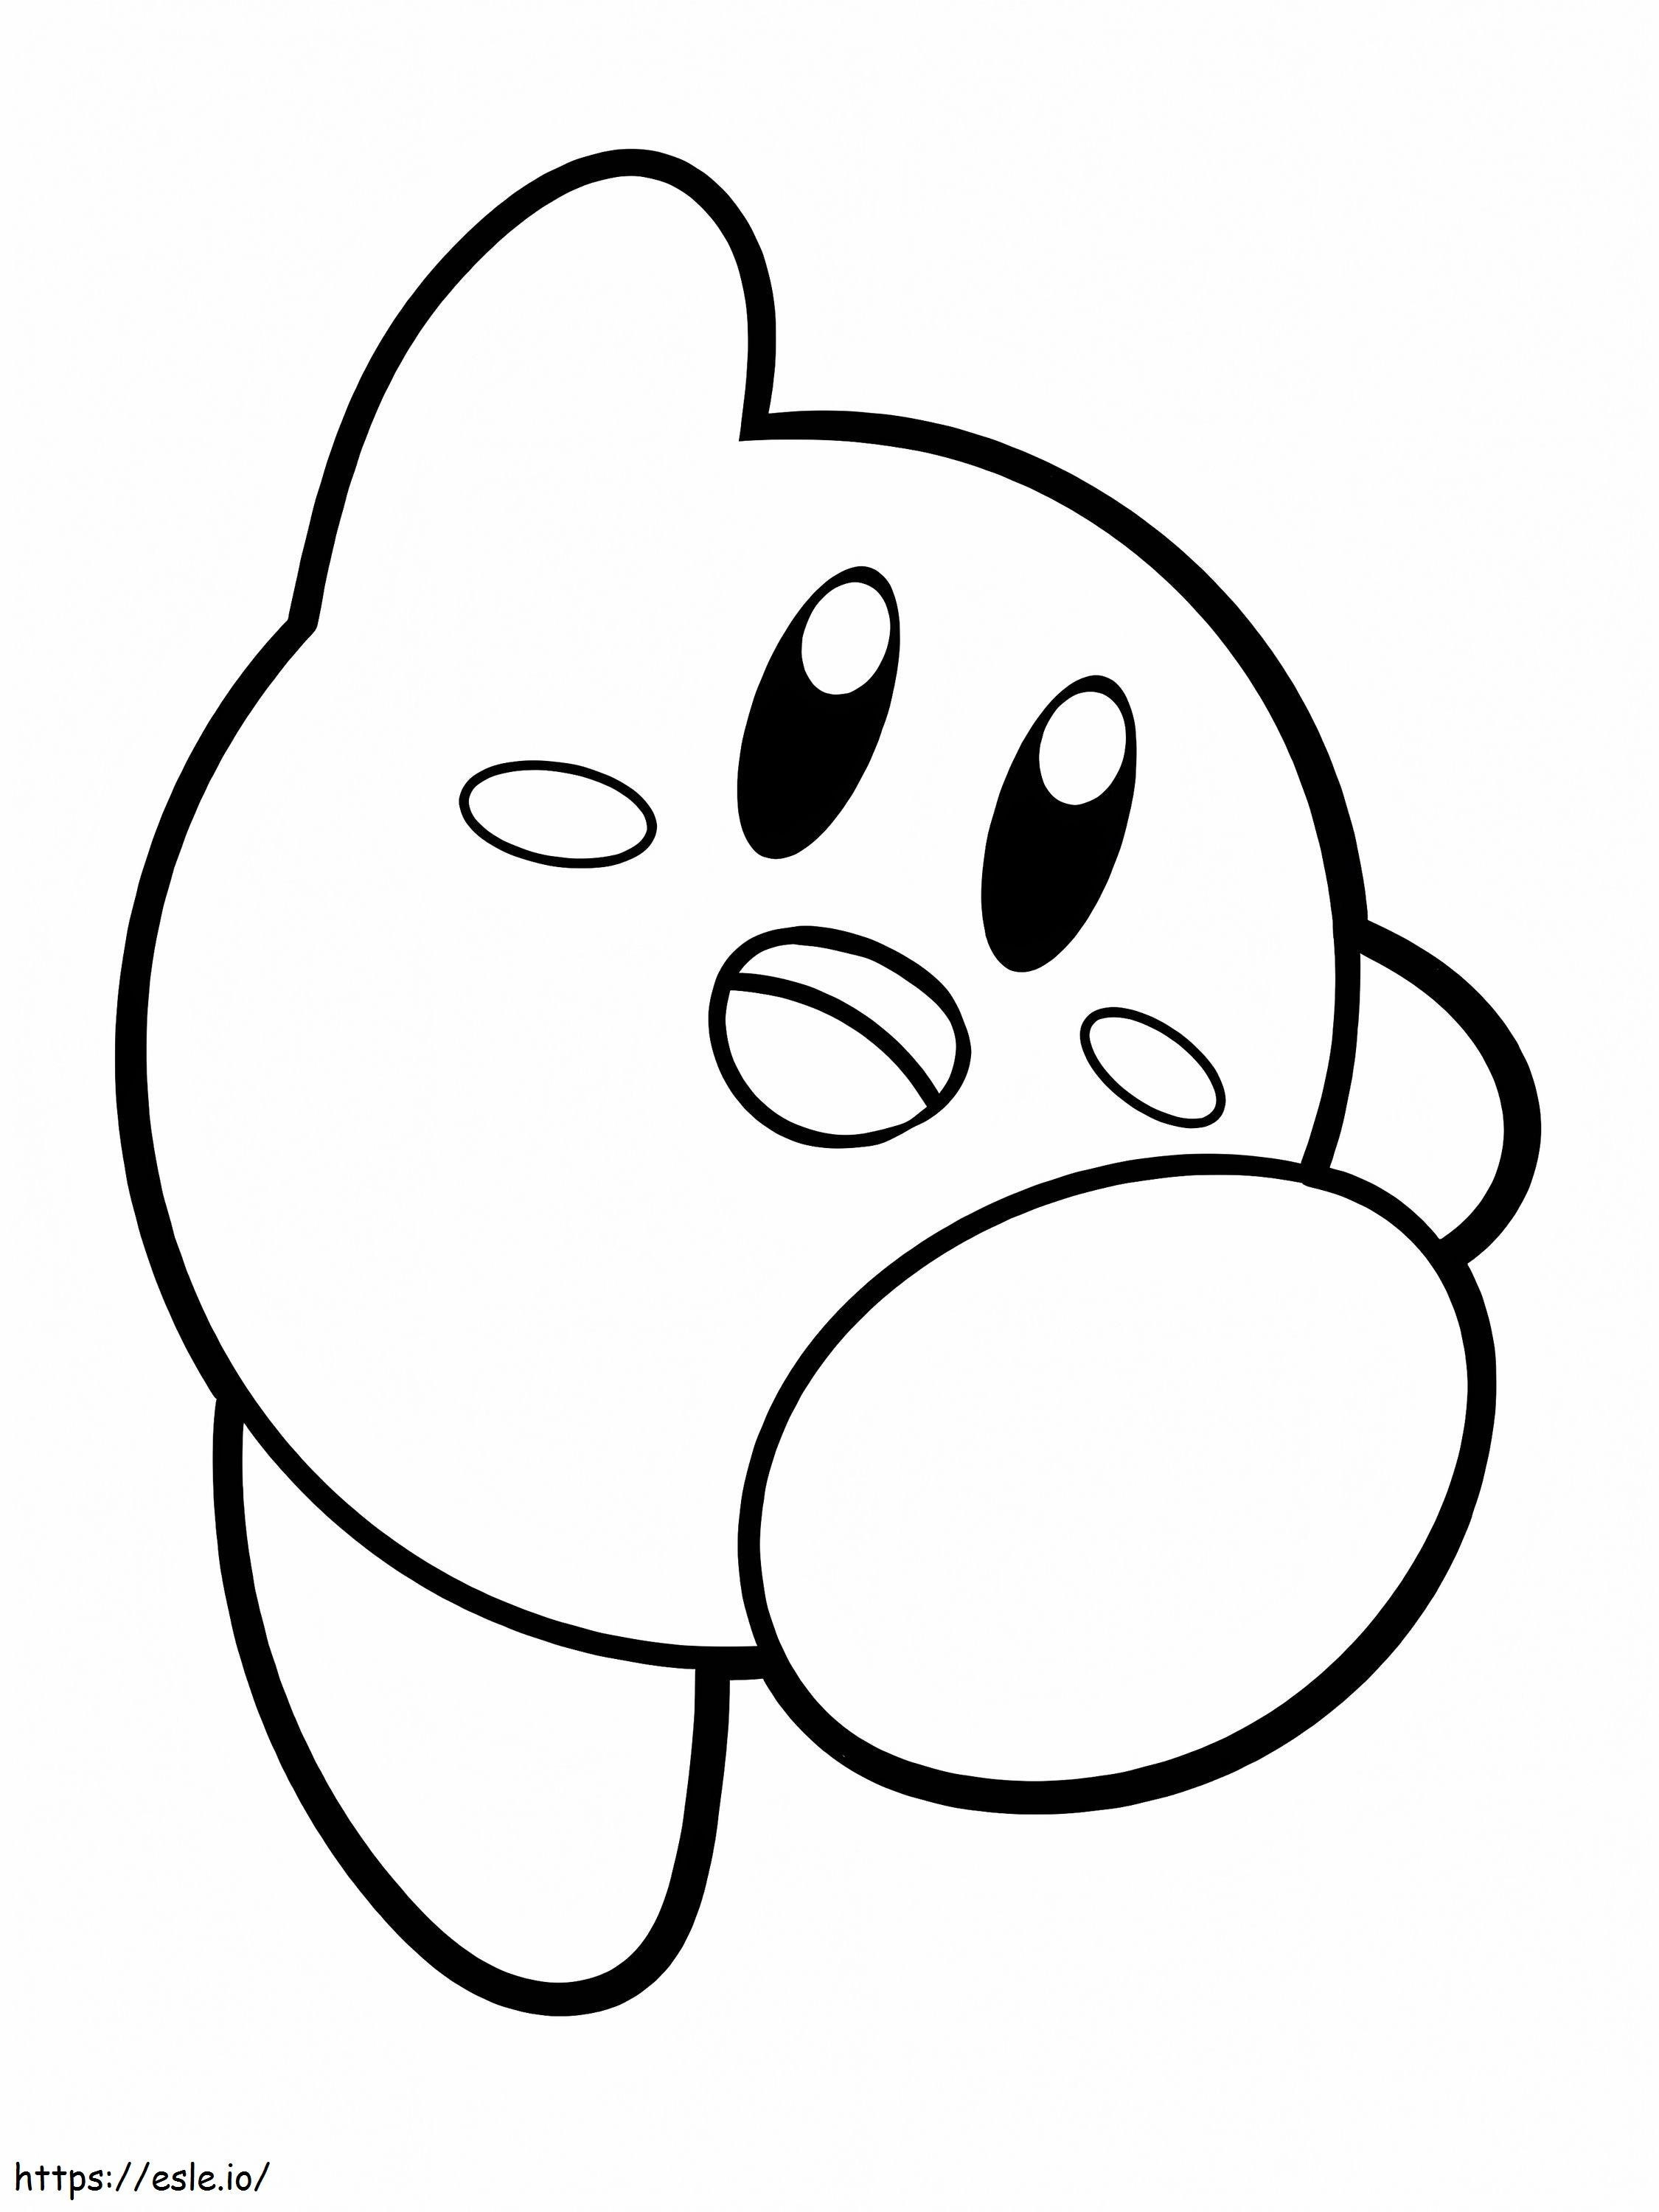 Kirby'ego Amicala kolorowanka